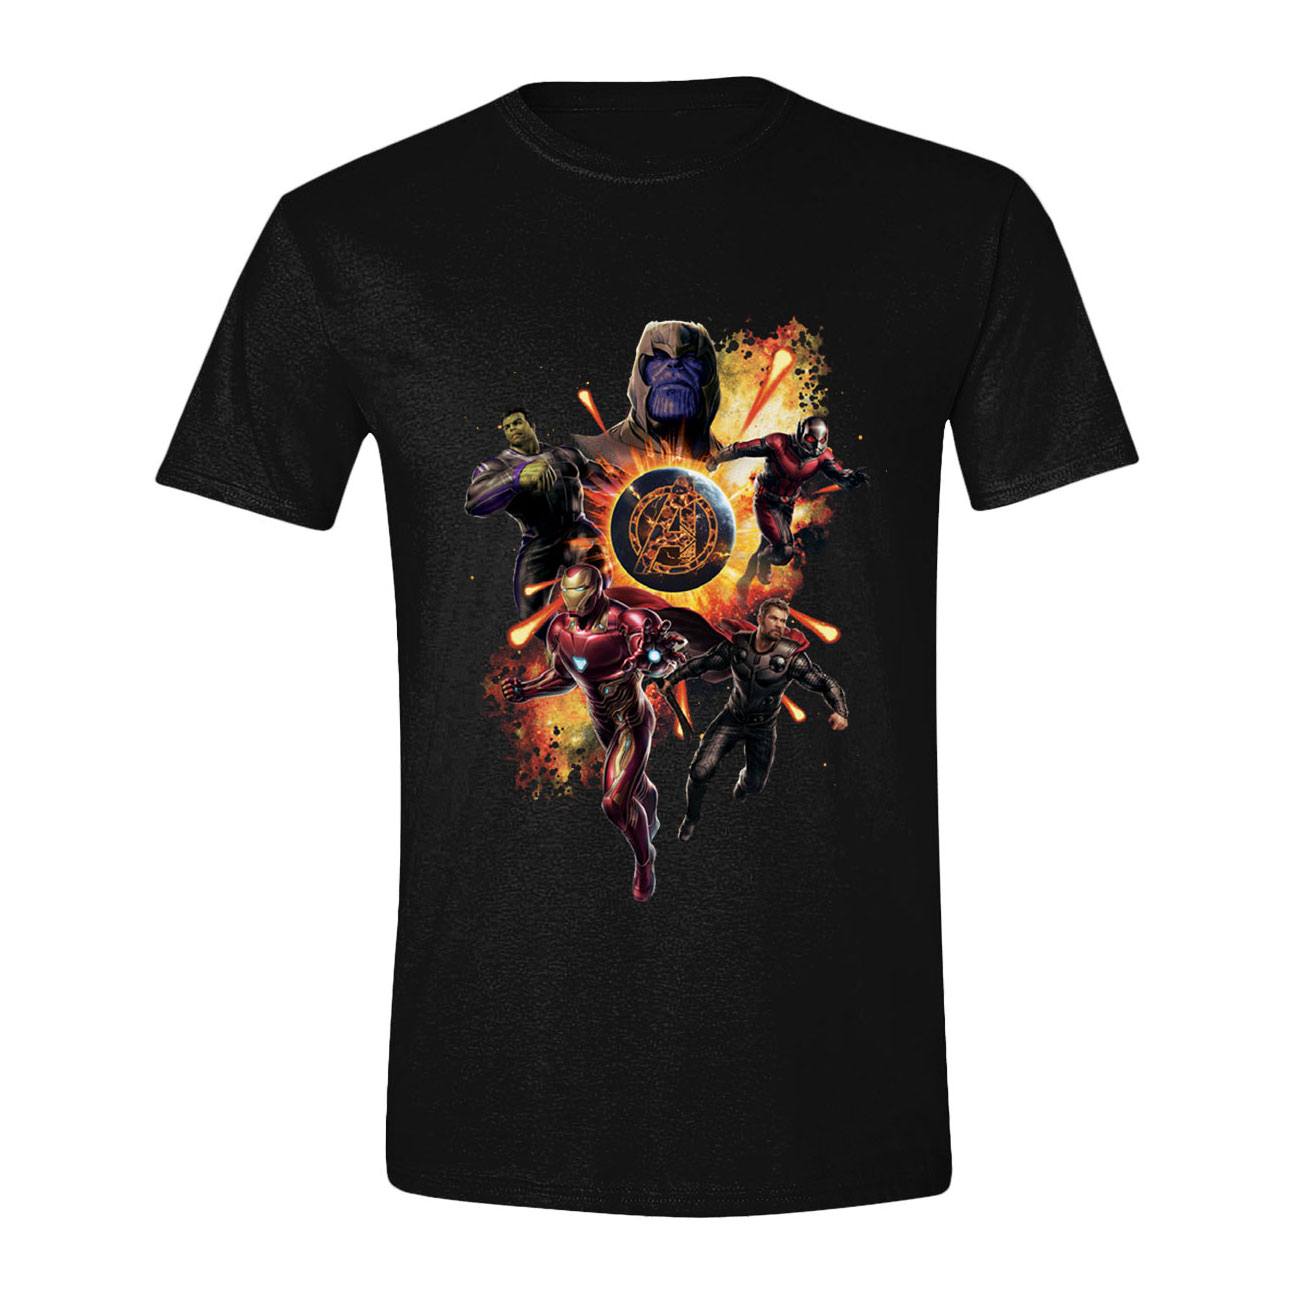 Avengers : Endgame T-Shirt Thanos & Avengers (L)